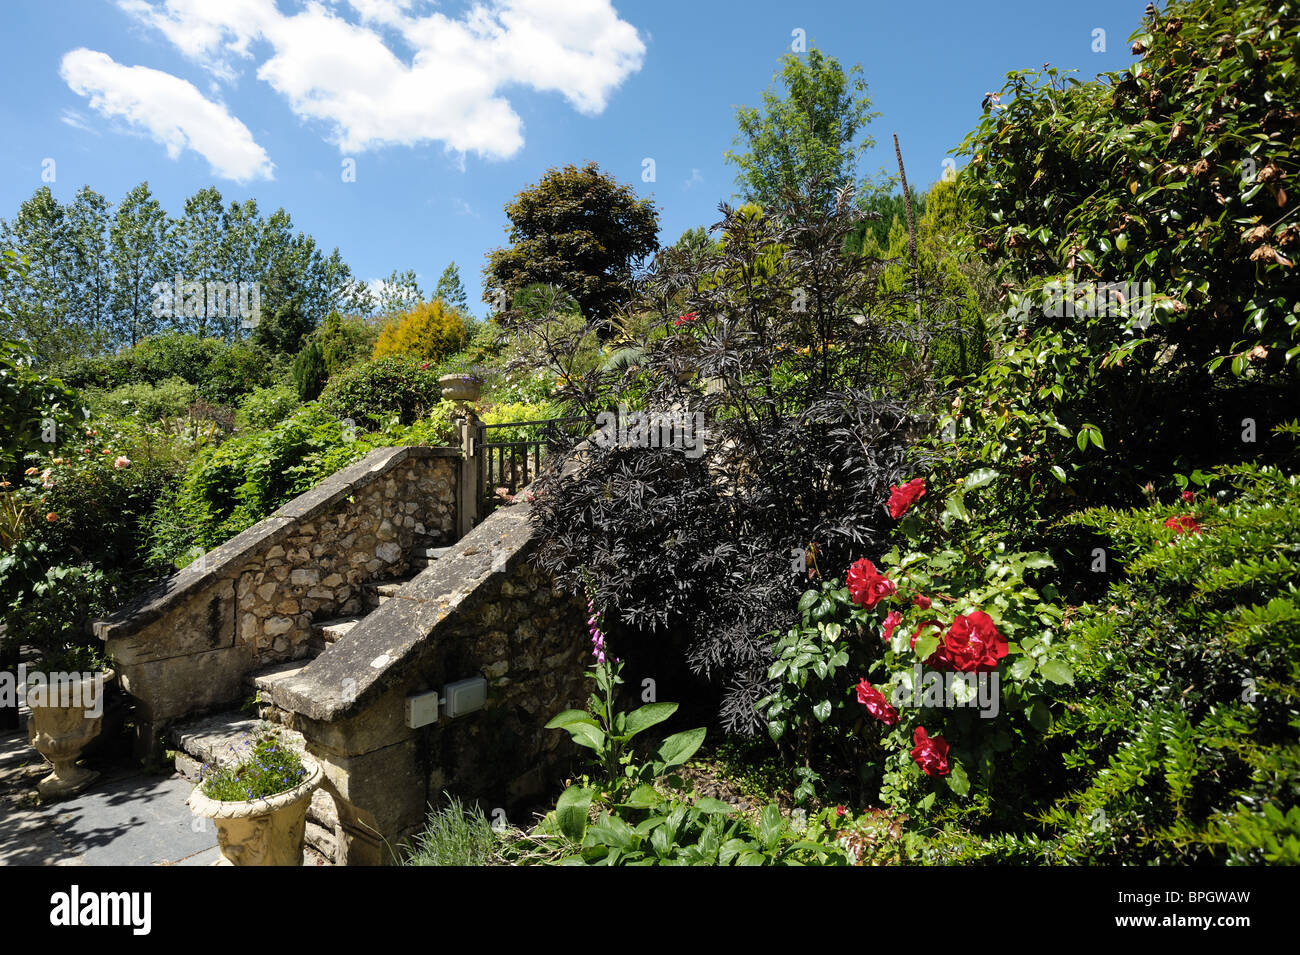 Jardin avec des arbustes, des marches en pierre, arbres et plantes à fleurs roses rouges sur une belle journée d'été Banque D'Images